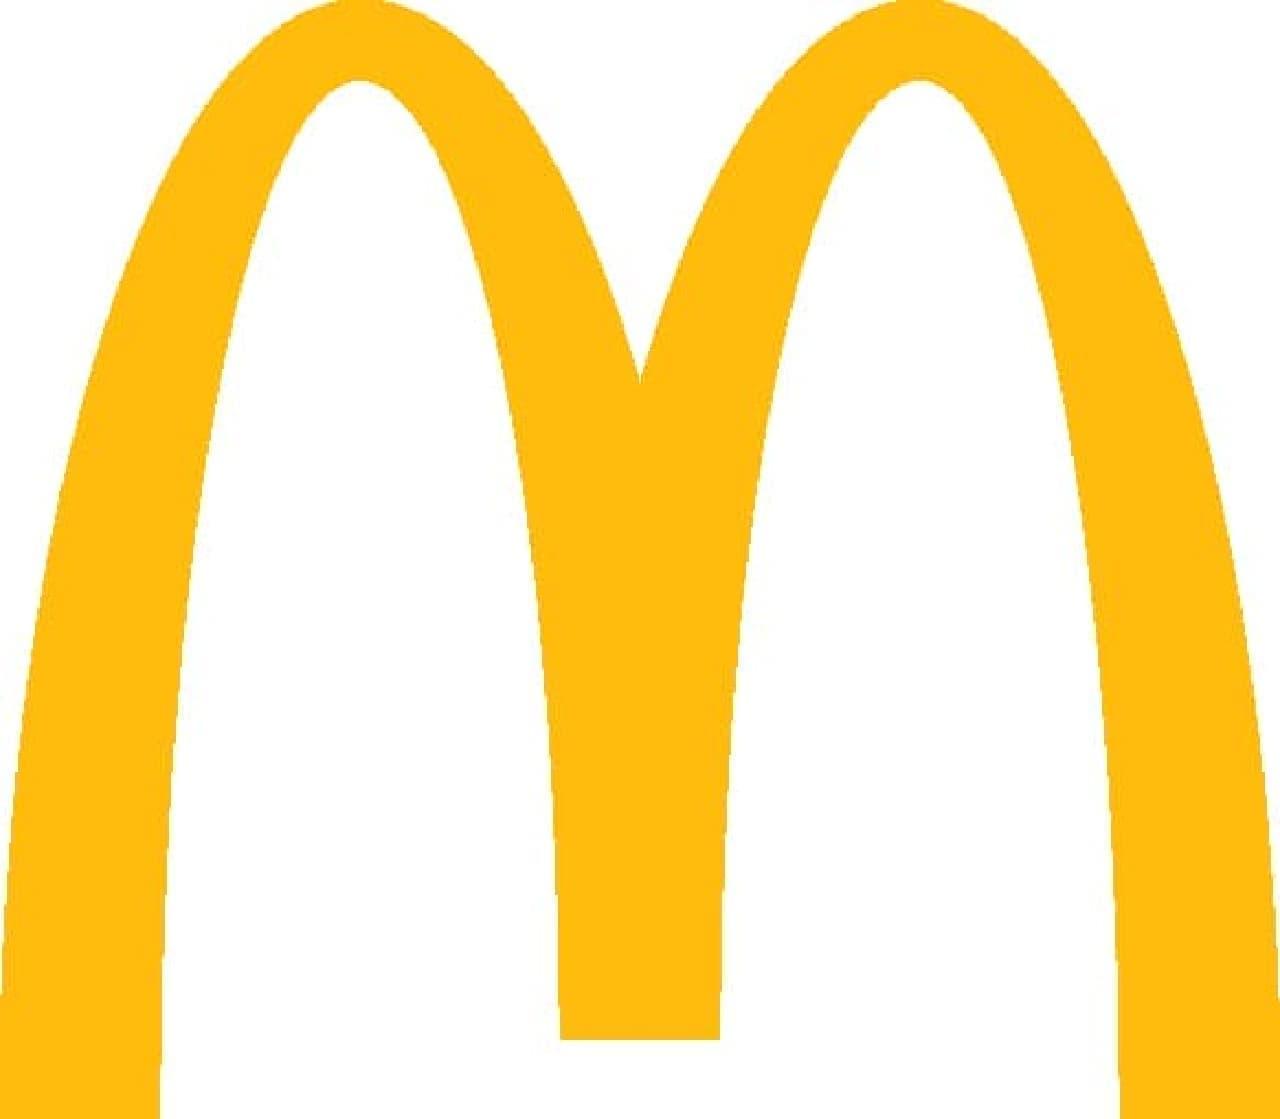 McDonald's introduces new bar code payment service.